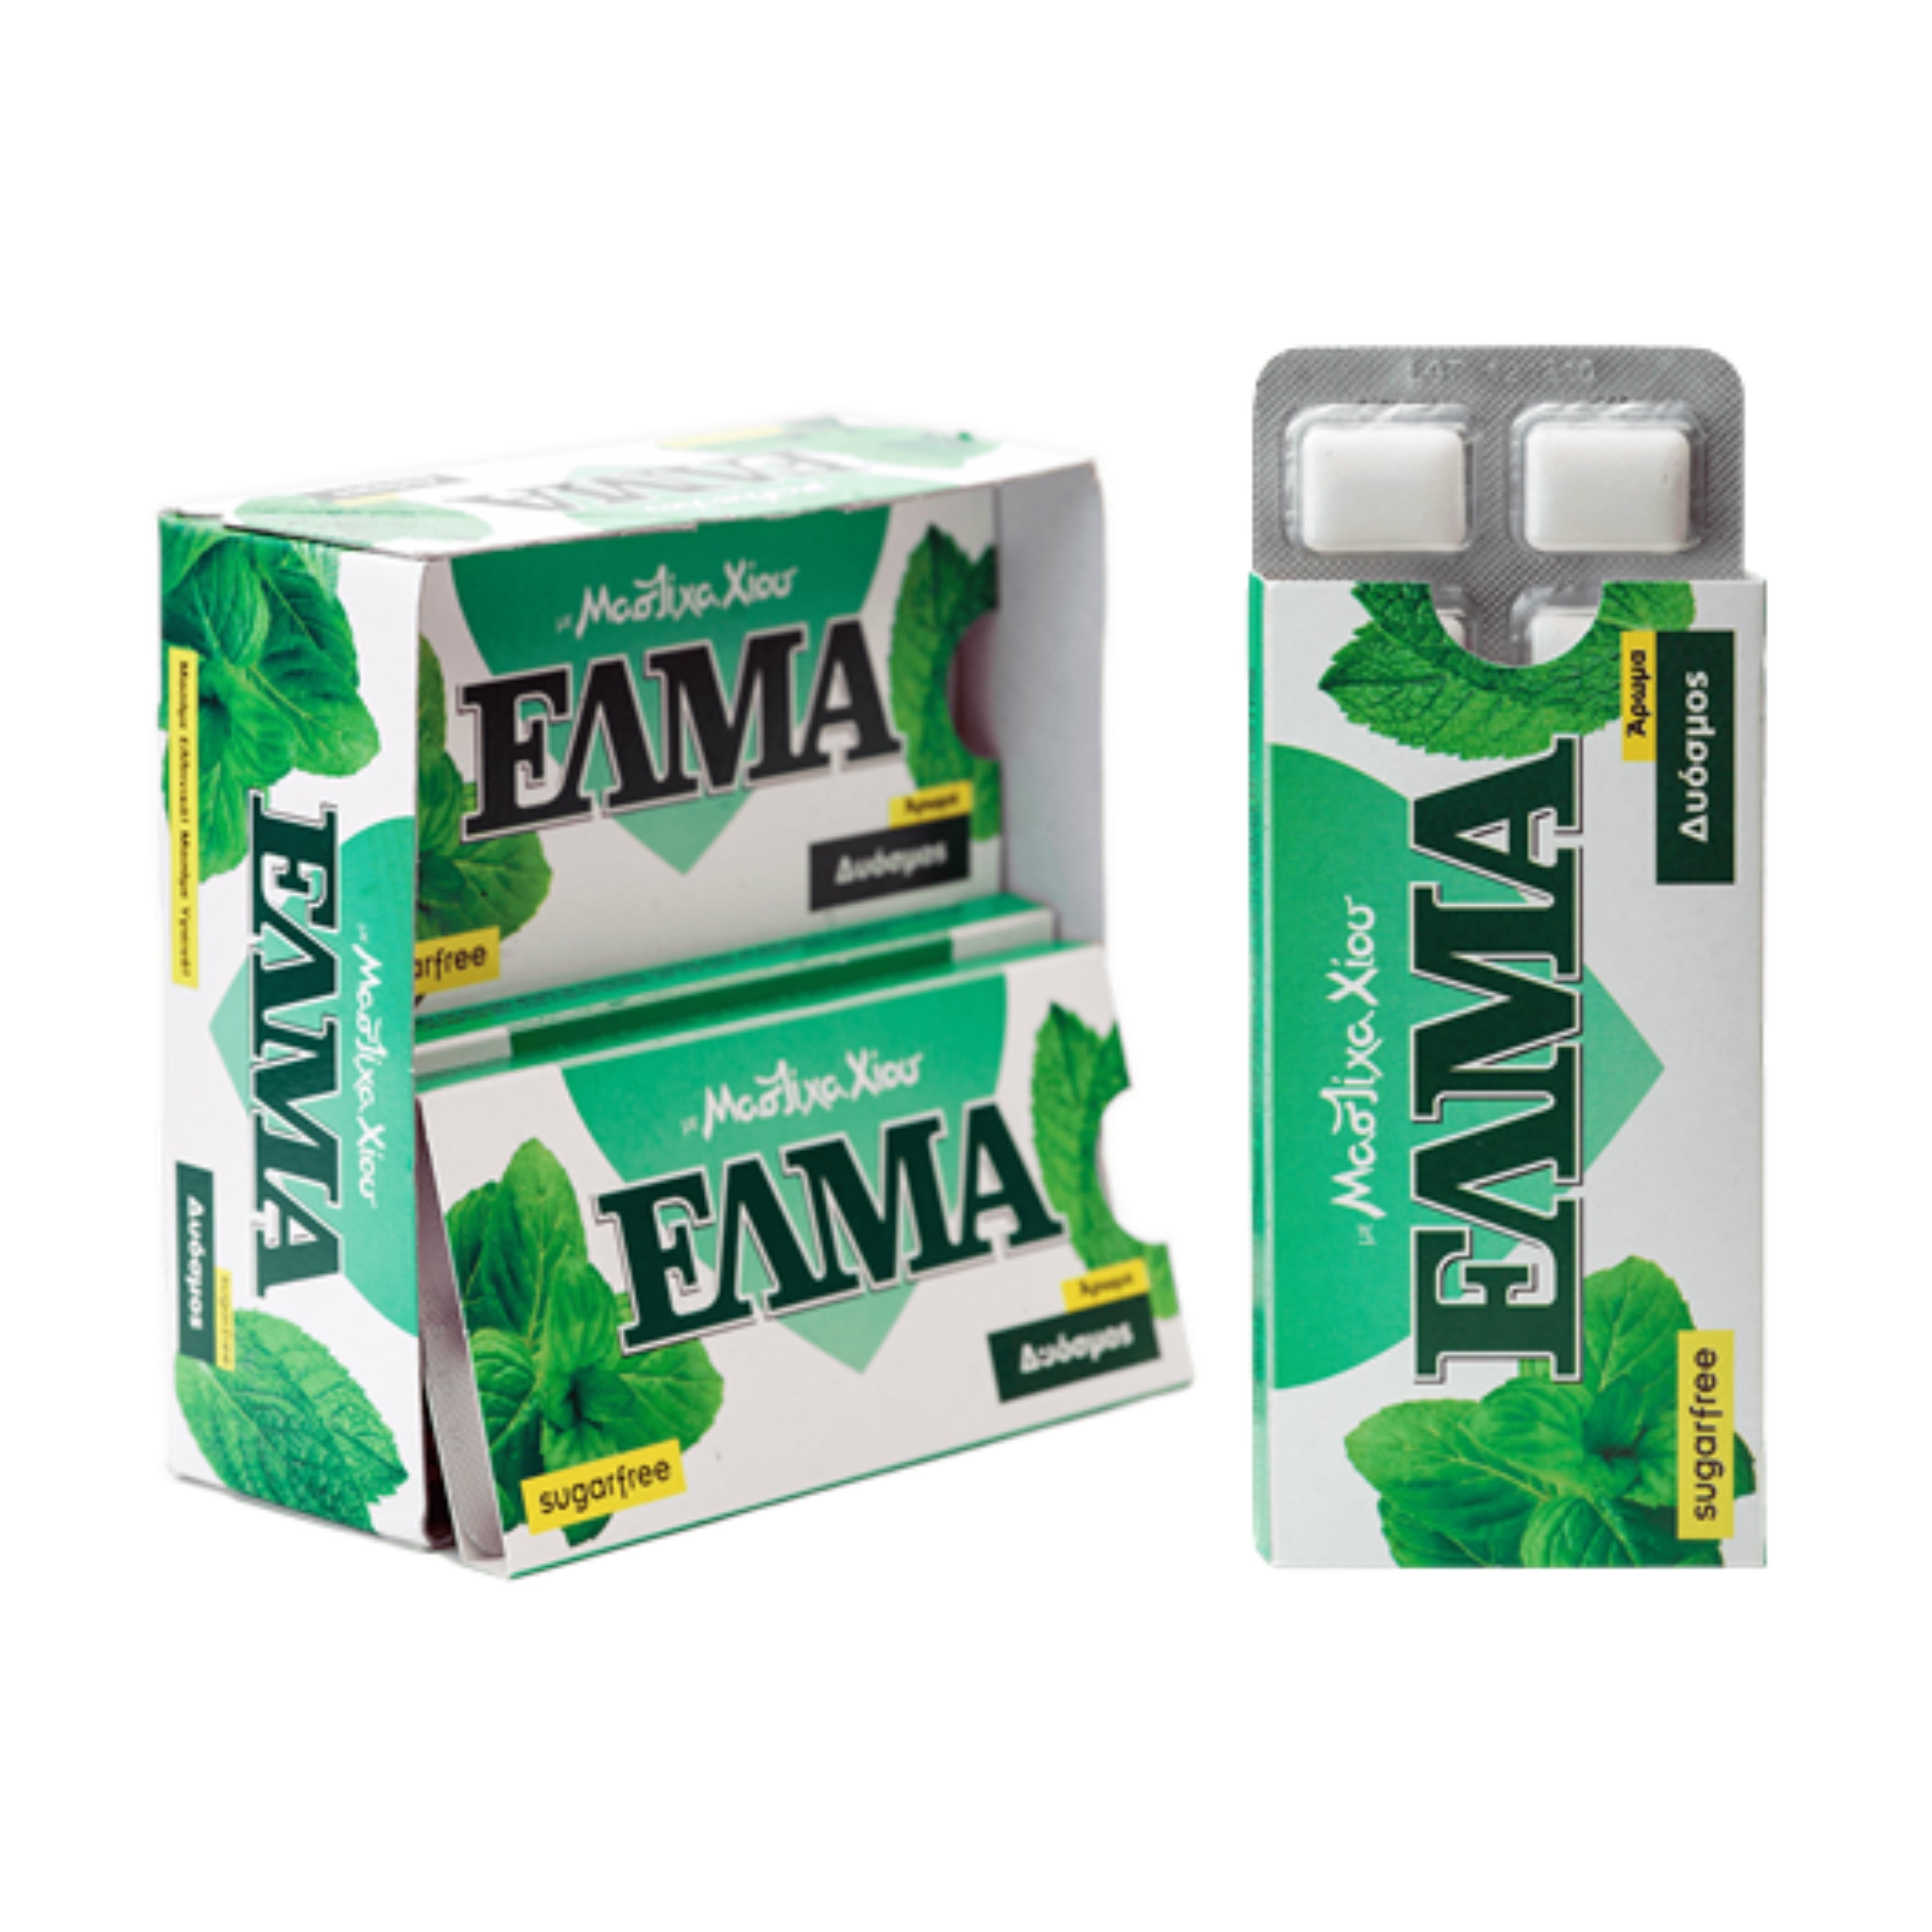 Elma spearmint mastic gum - 20x13g